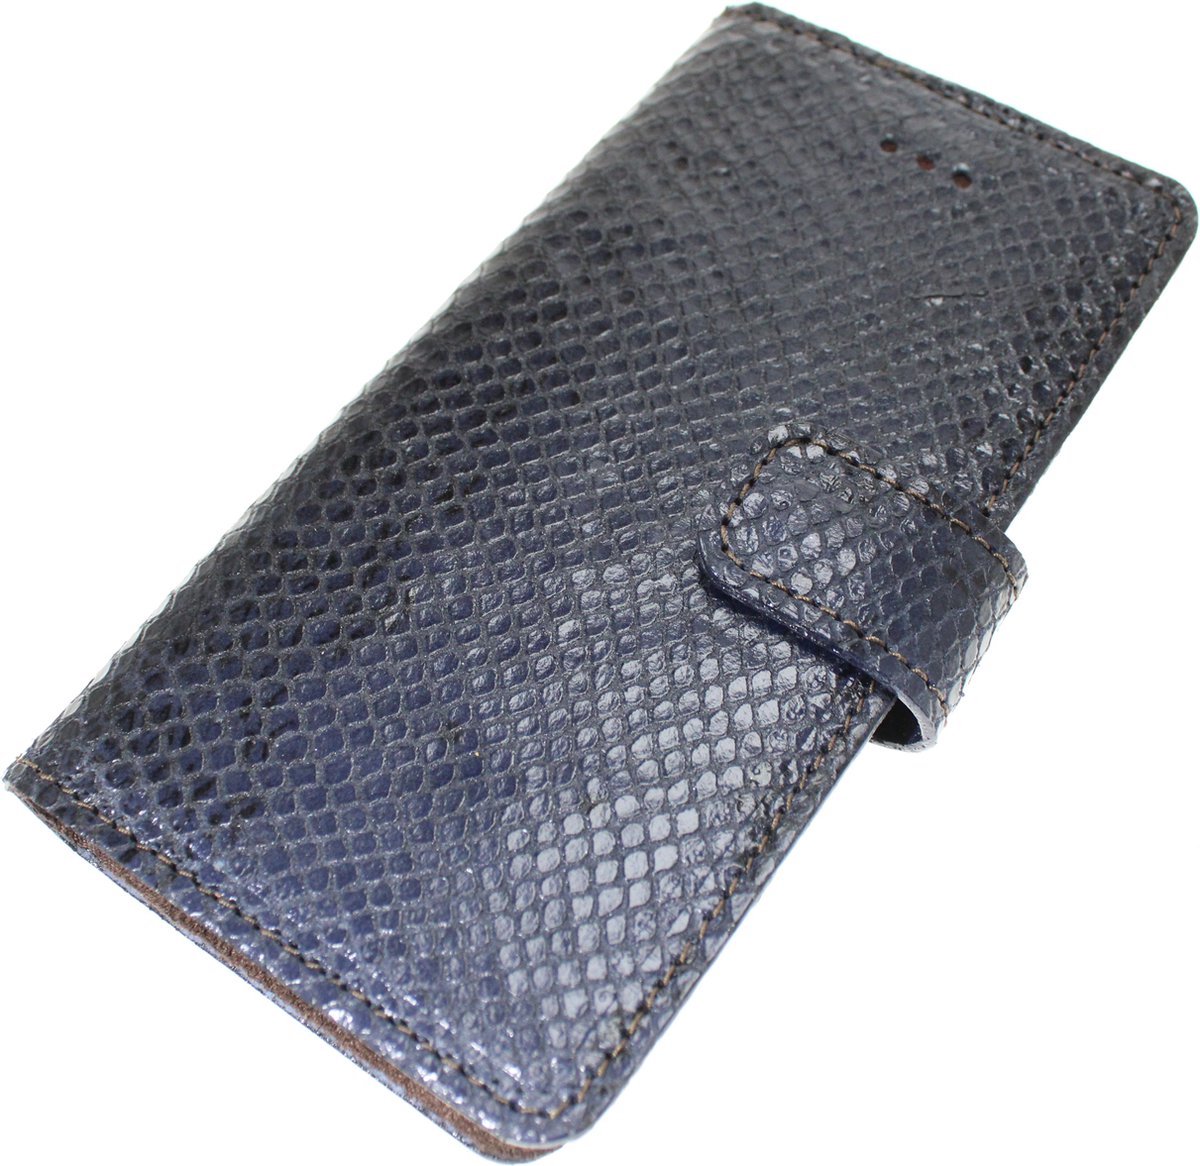 Made-NL Handgemaakte ( Apple iPhone 11 Pro Max ) book case Zwart/blauw slangenprint reliëf kalfsleer